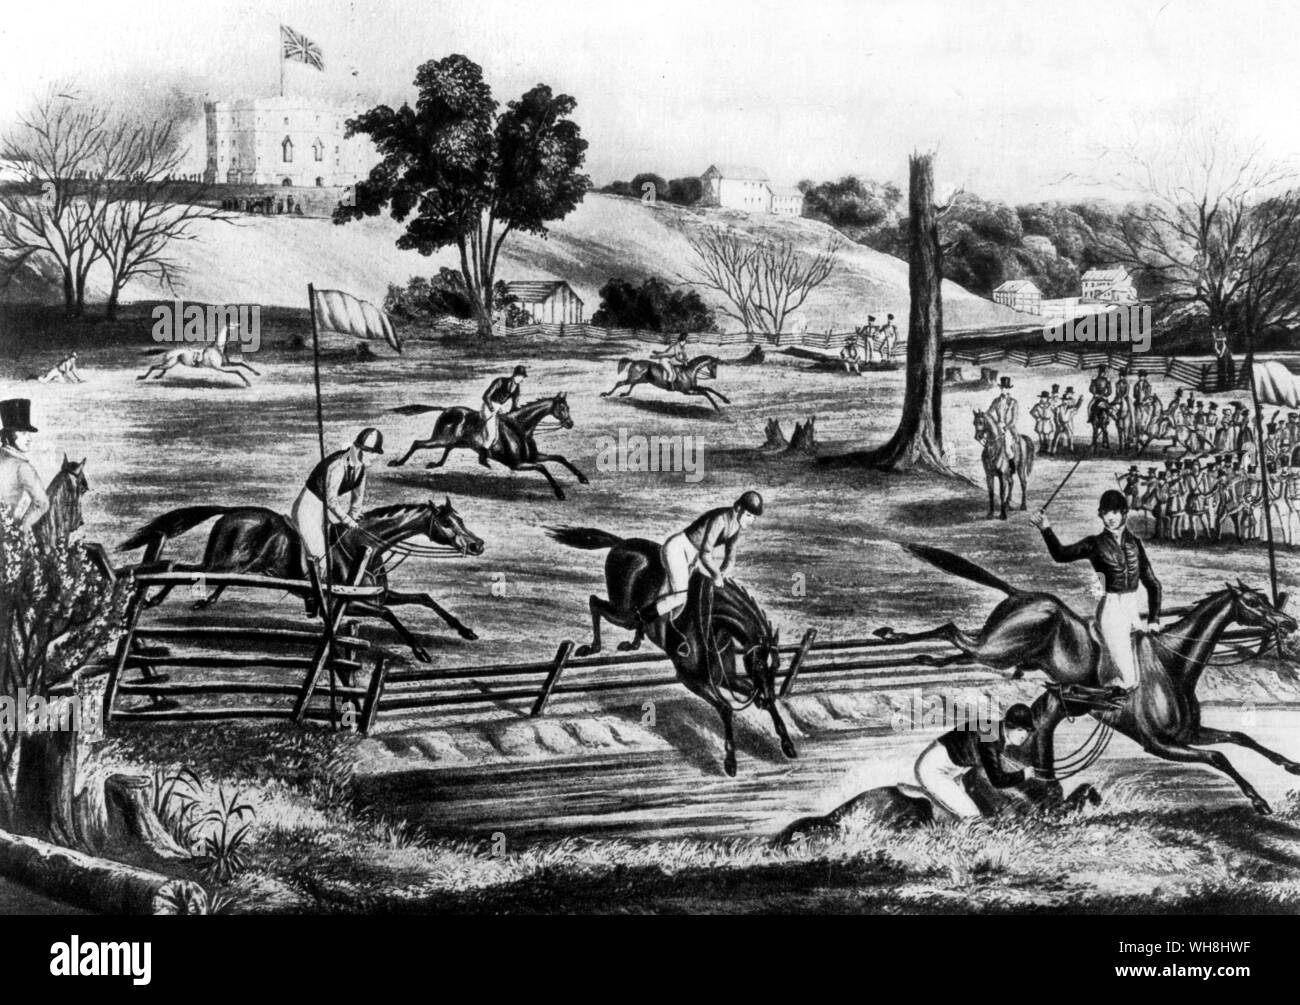 Ontario steeplechasing - am 9. Mai 1843 wurde die Armee in "Kanada West" auf eine große militärische Steeplechase in London, 100 km westlich von Toronto. Dies war erst das zweite Jahr des Laufens in Ontario, die in den nächsten 15 Jahren mehr Erfolg als die von Quebec, weil von einem Englischen eher als eine französische Bevölkerung. Kanadische steeplechasing, beginnend so früh und energisch, war die wichtigste übergeordnete der Amerikanischen. Die Geschichte der Pferderennen von Roger Longrigg, Seite 220. Stockfoto